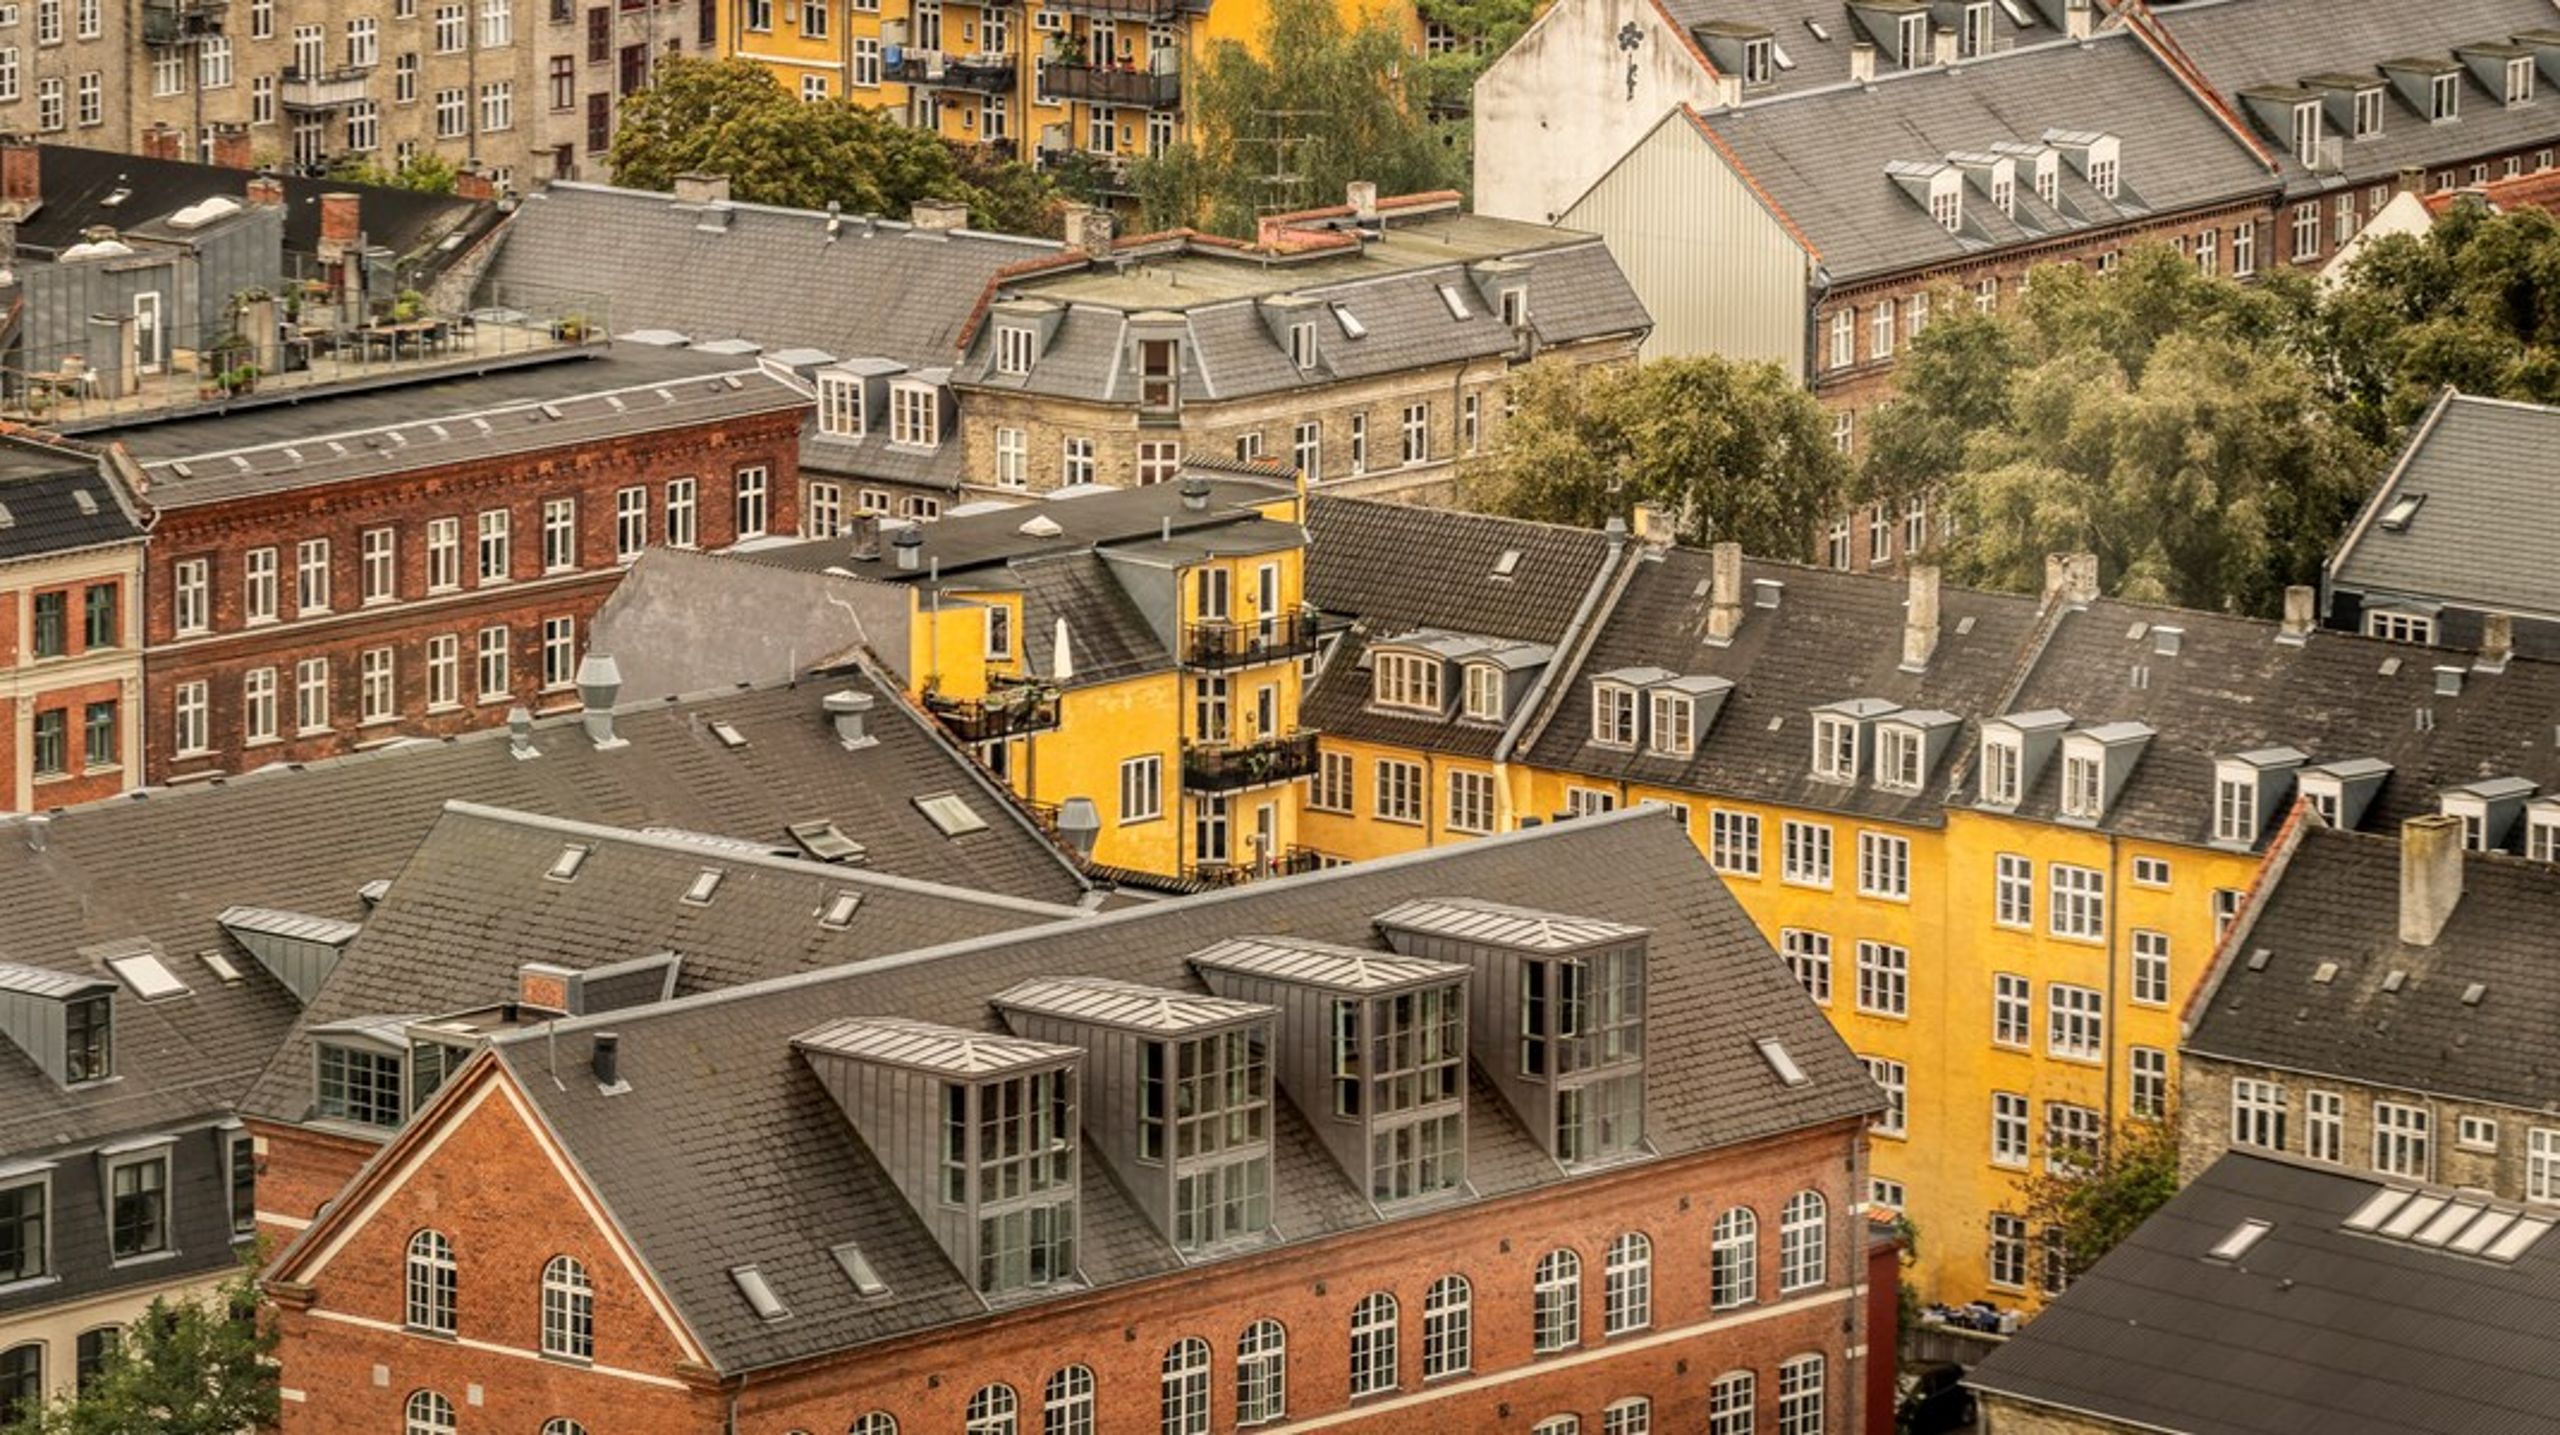 De samfundsændringer, som berøres i bogen, er hver især brikker til at forstå det samlede billede af, hvorfor vi i dag står med et københavnsk boligmarked, hvor det er svært at få en betalelig bolig, skriver Helene Toxværd.<br>